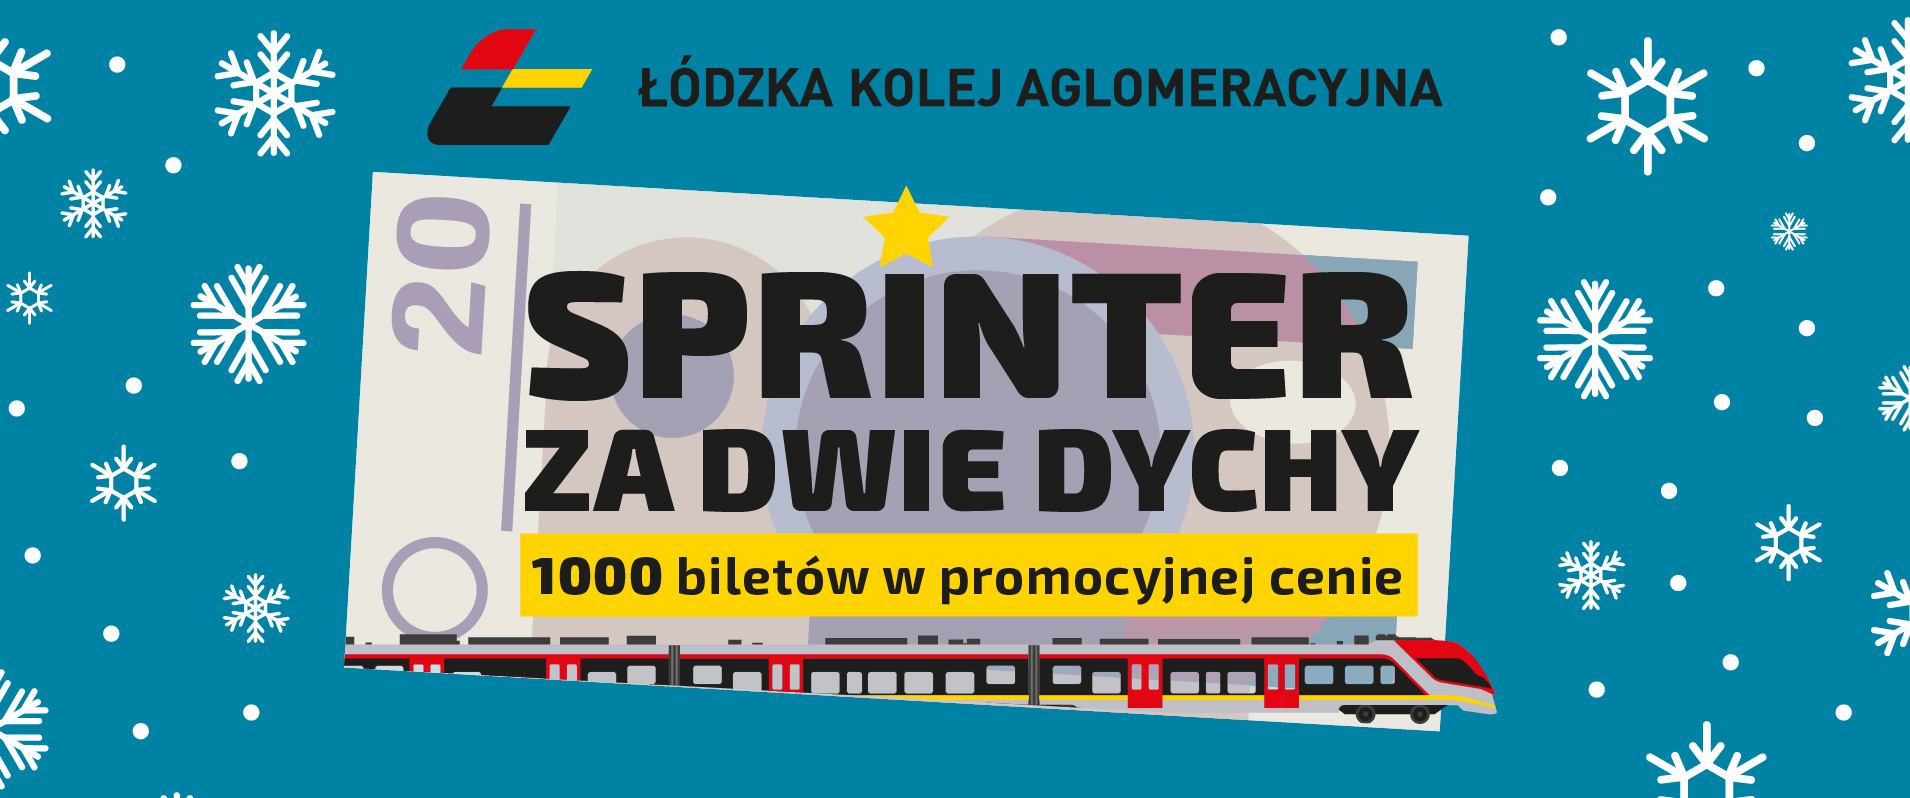 Grafika okazjonalna - przedstawia logo ŁKA, a pod nią wizerunek banknotu 20 zł, na którym jest napisane "Sprinter za dwie dychy - 1000 biletów w promocyjnej cenie". 